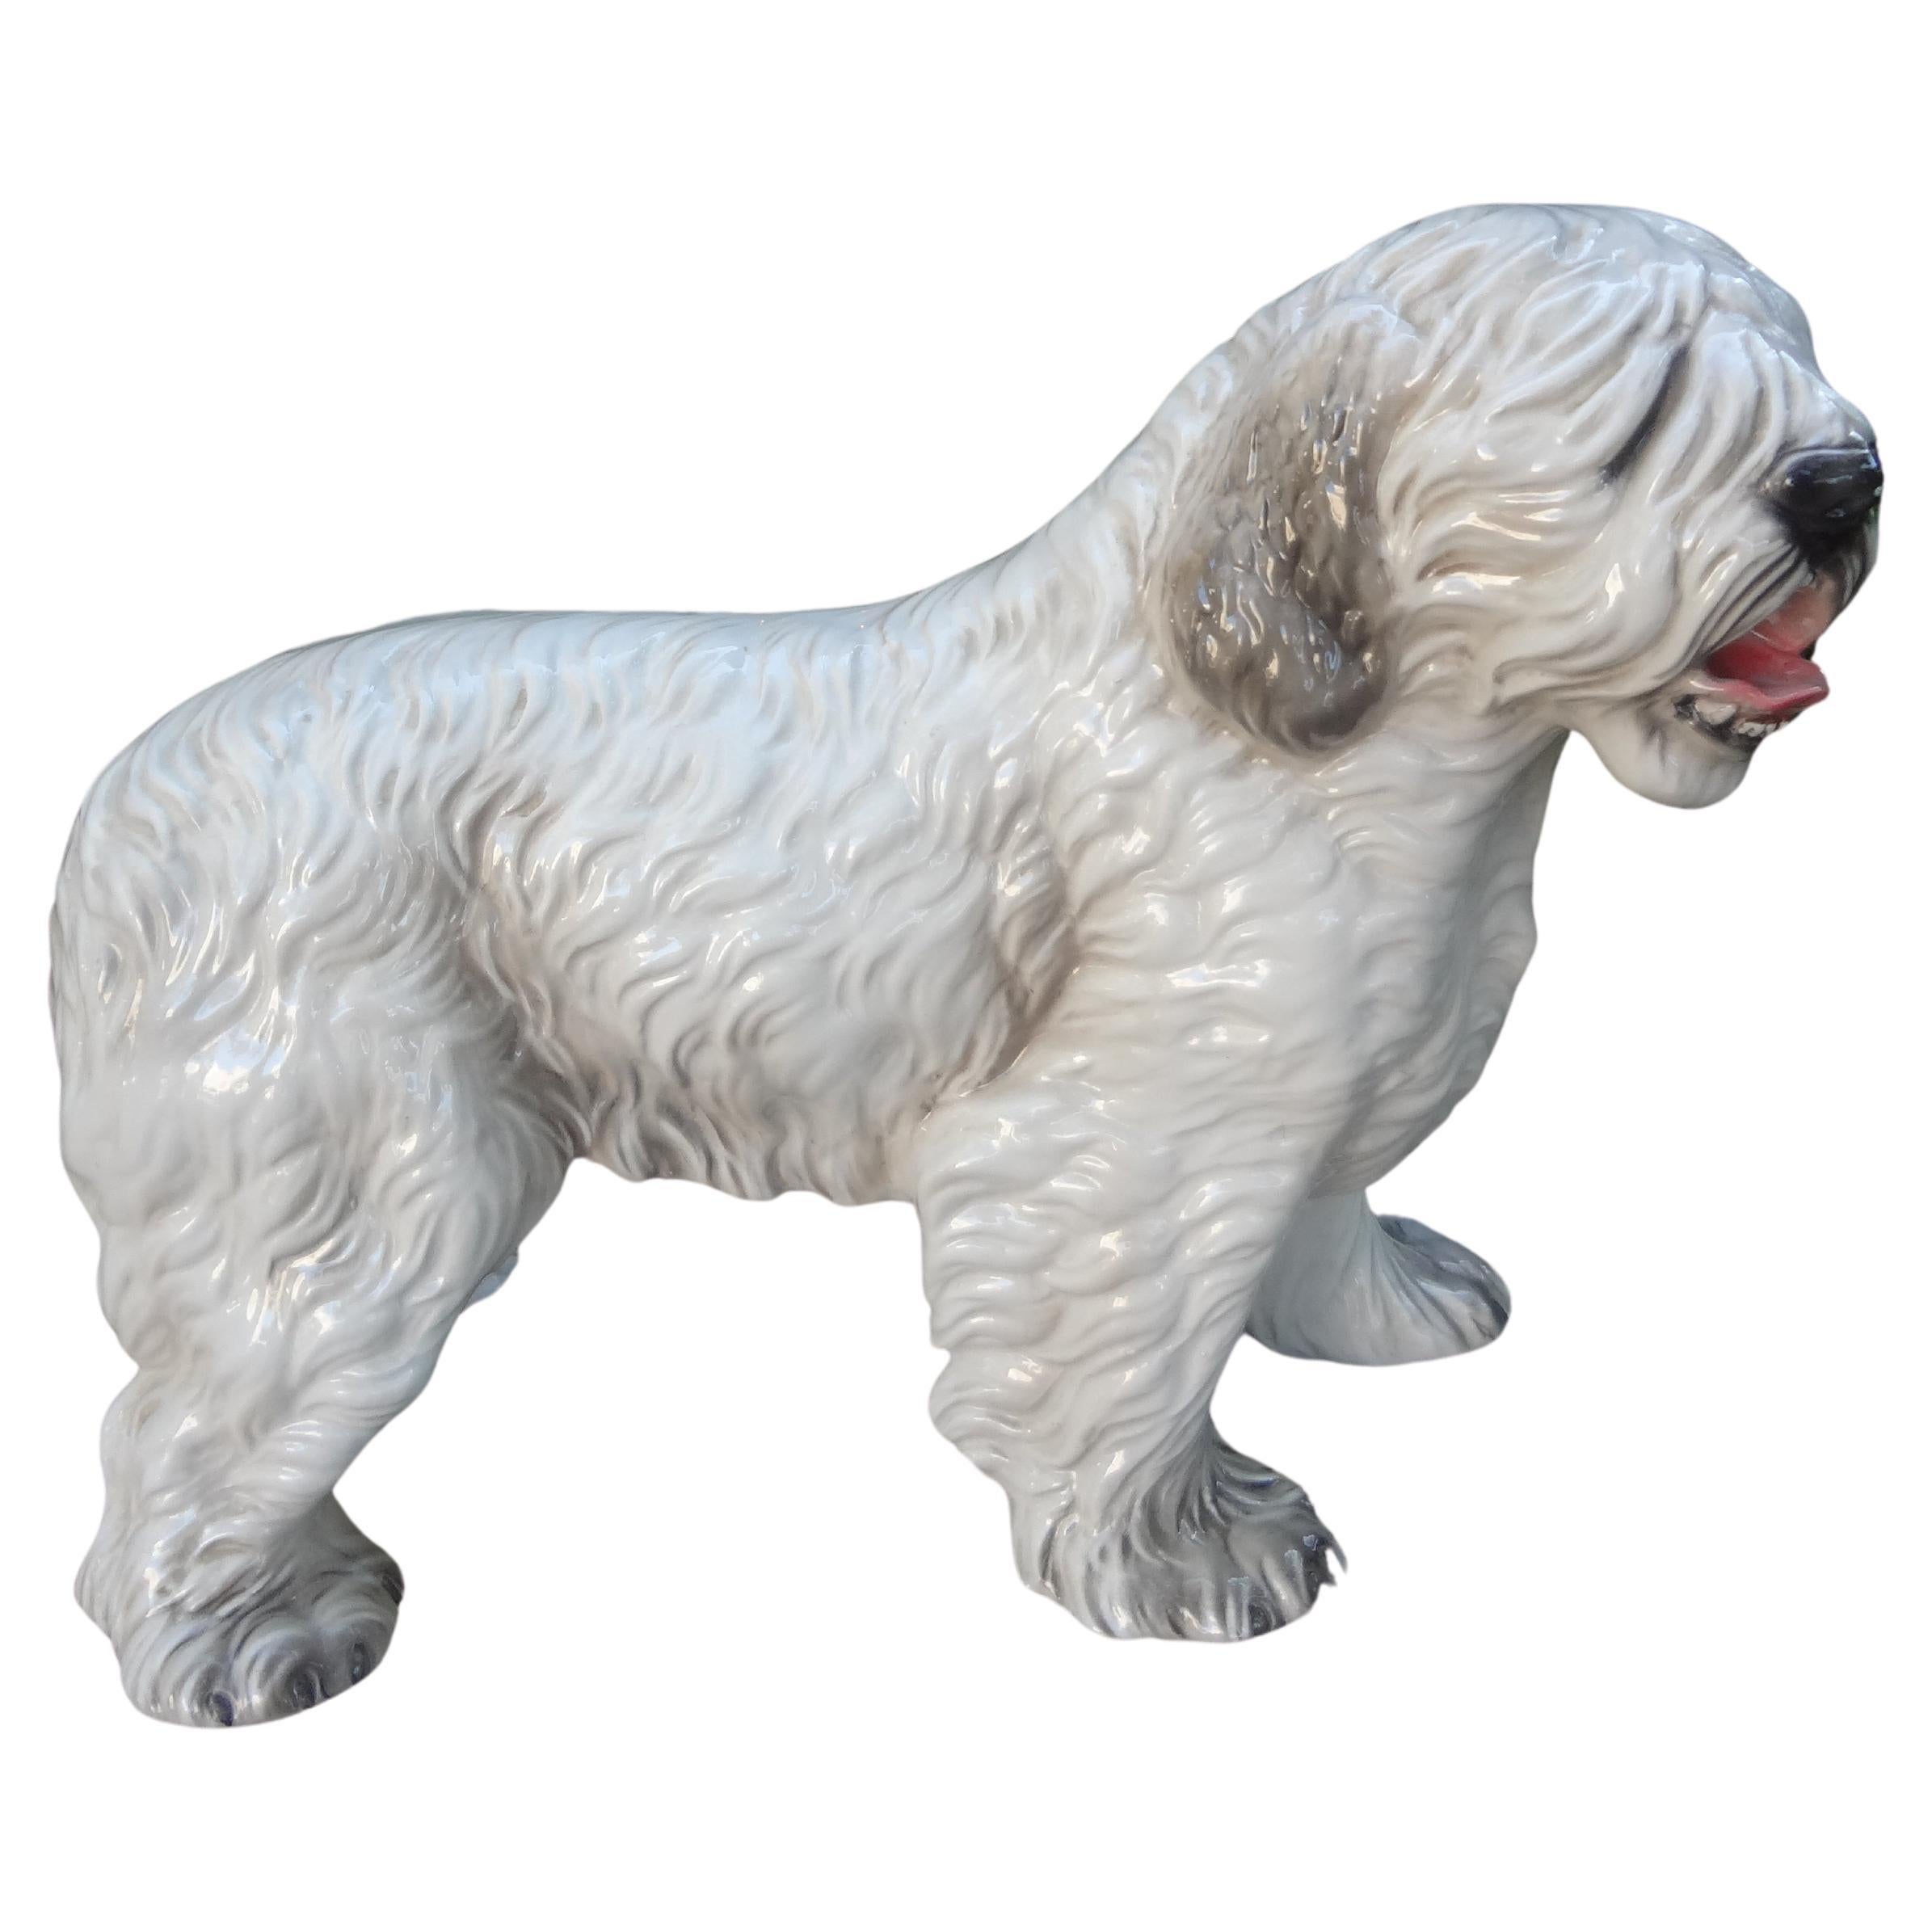 Italienische glasierte keramische Hundeskulptur.
Gut detaillierte italienische glasierte keramische Hundestatue oder Skulptur eines Schafhundes.
Ronzan gestempelt, hergestellt in Italien.